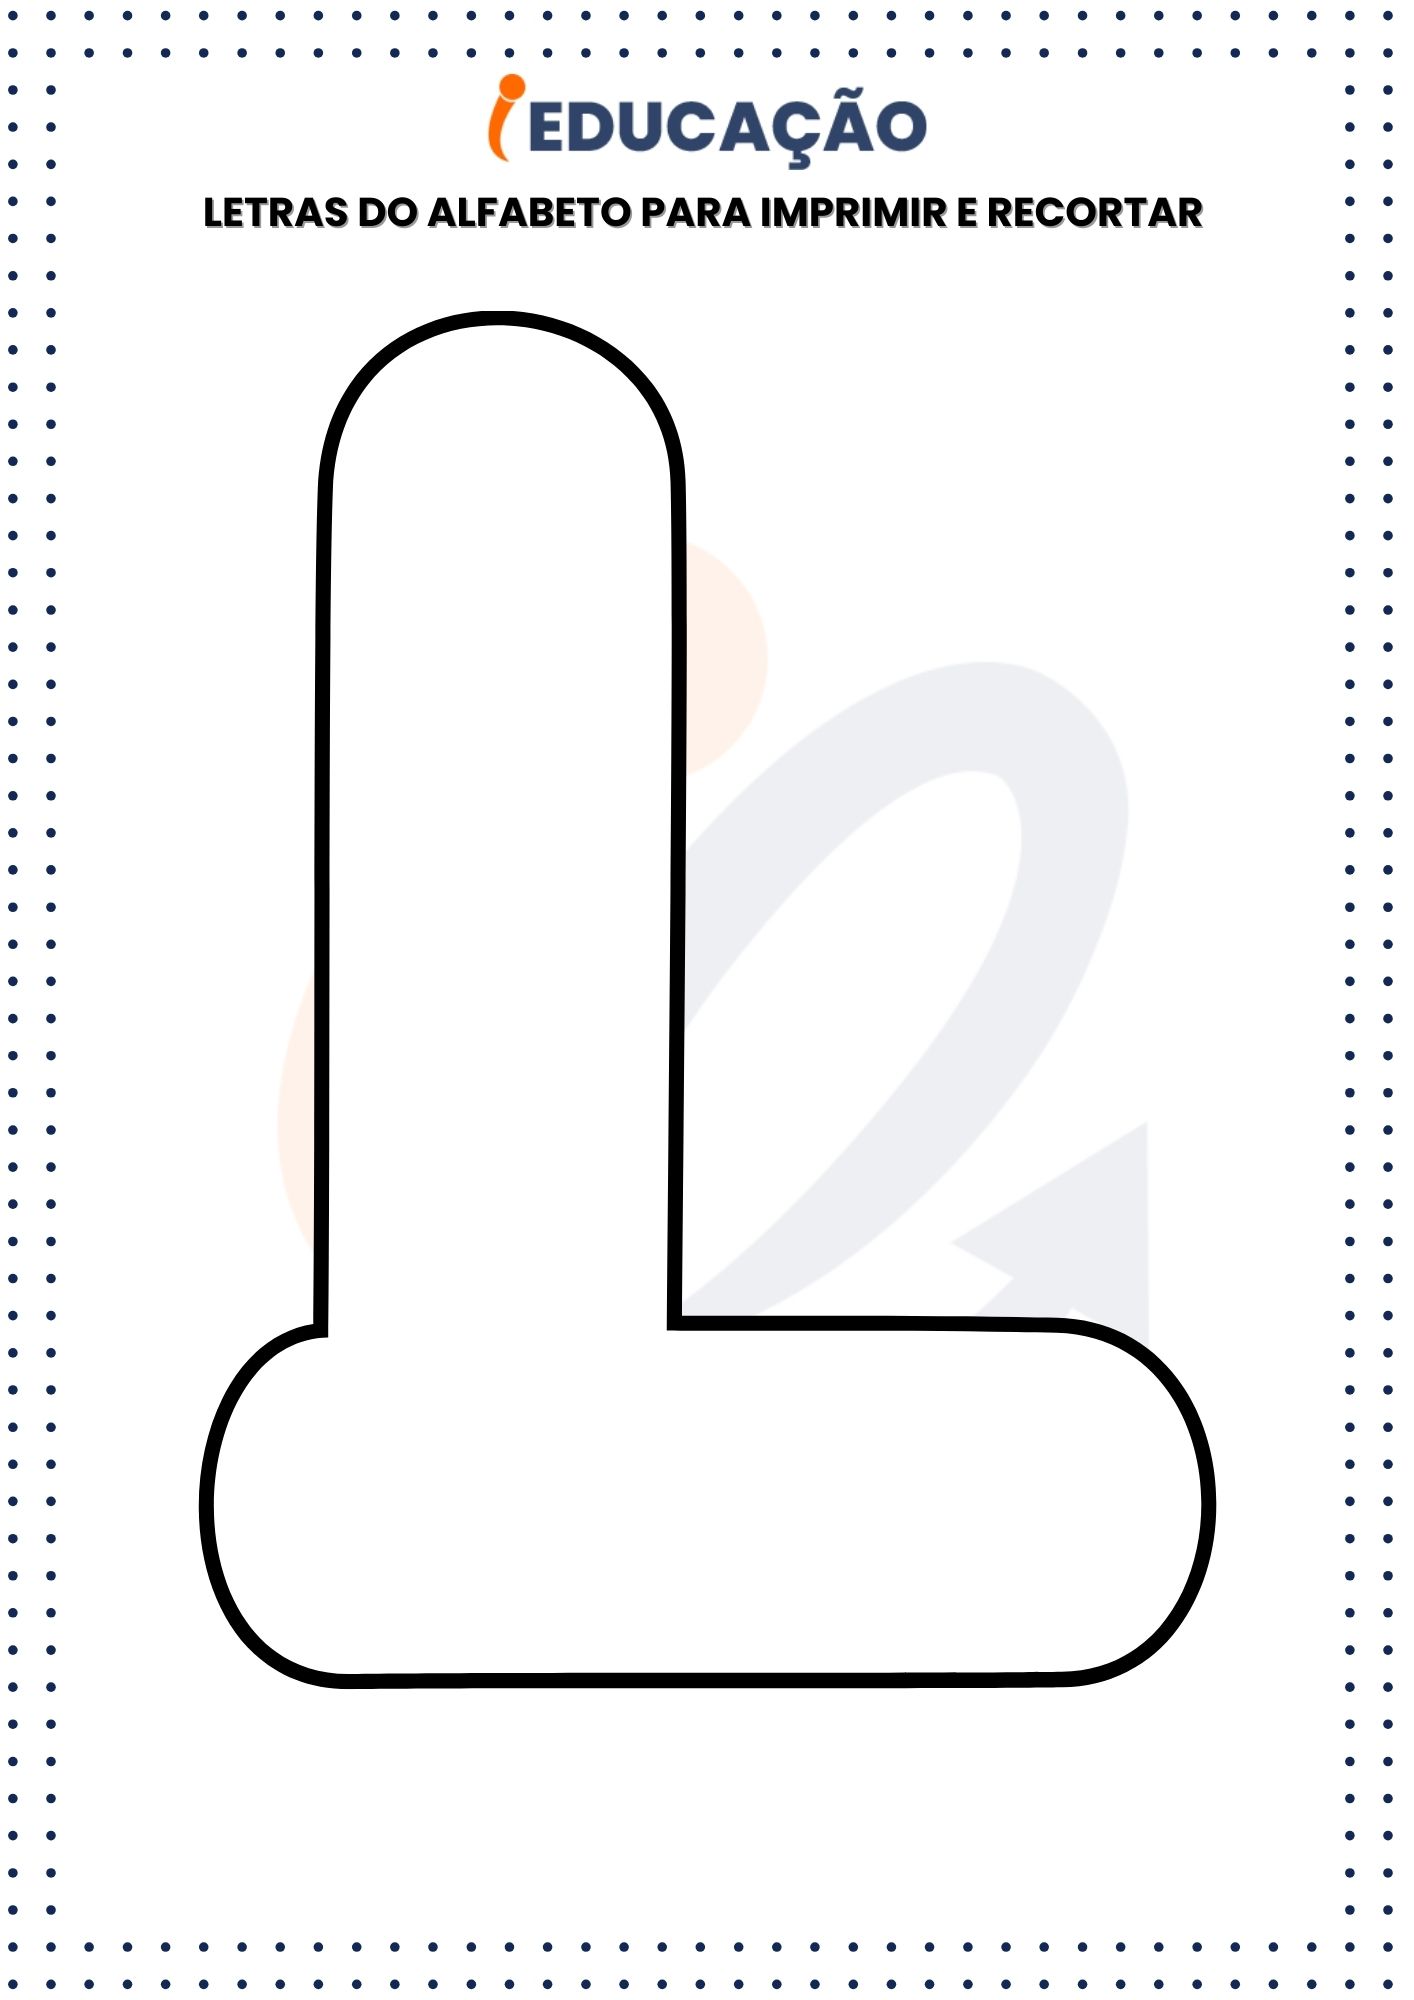 Letras do Alfabeto Para Imprimir e Recortar L